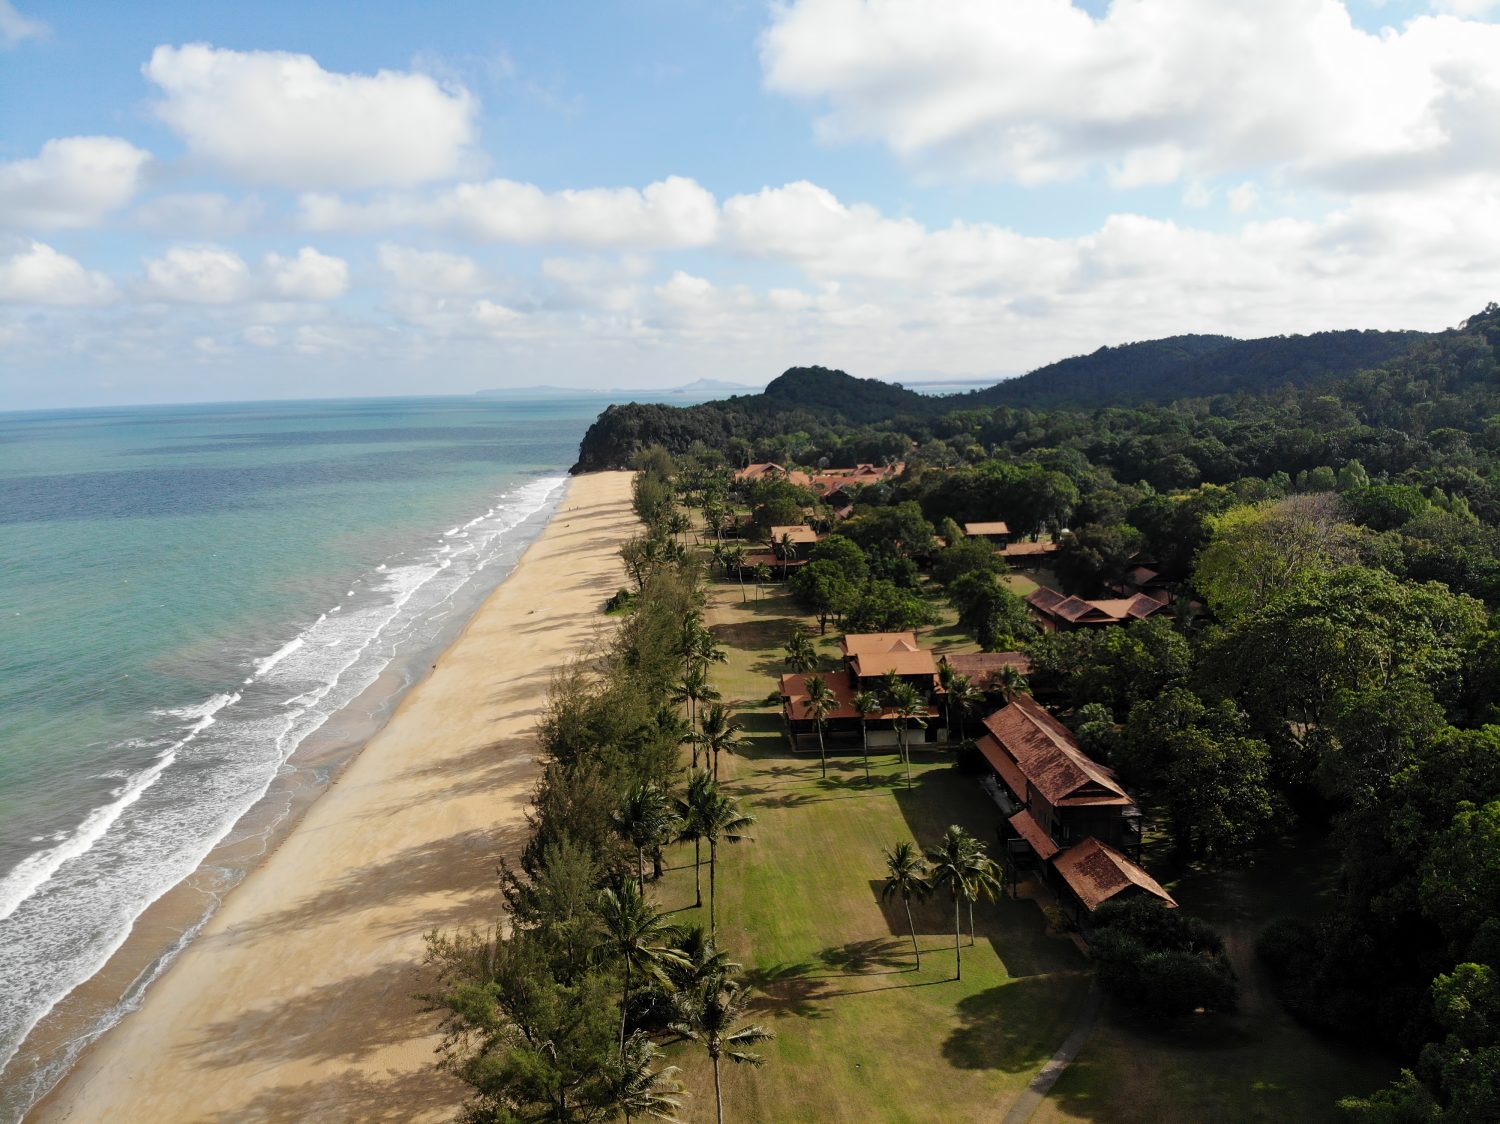 Pahang, MALESIA: Viste della spiaggia di Cherating dalla veduta aerea creata dalla fotocamera dji